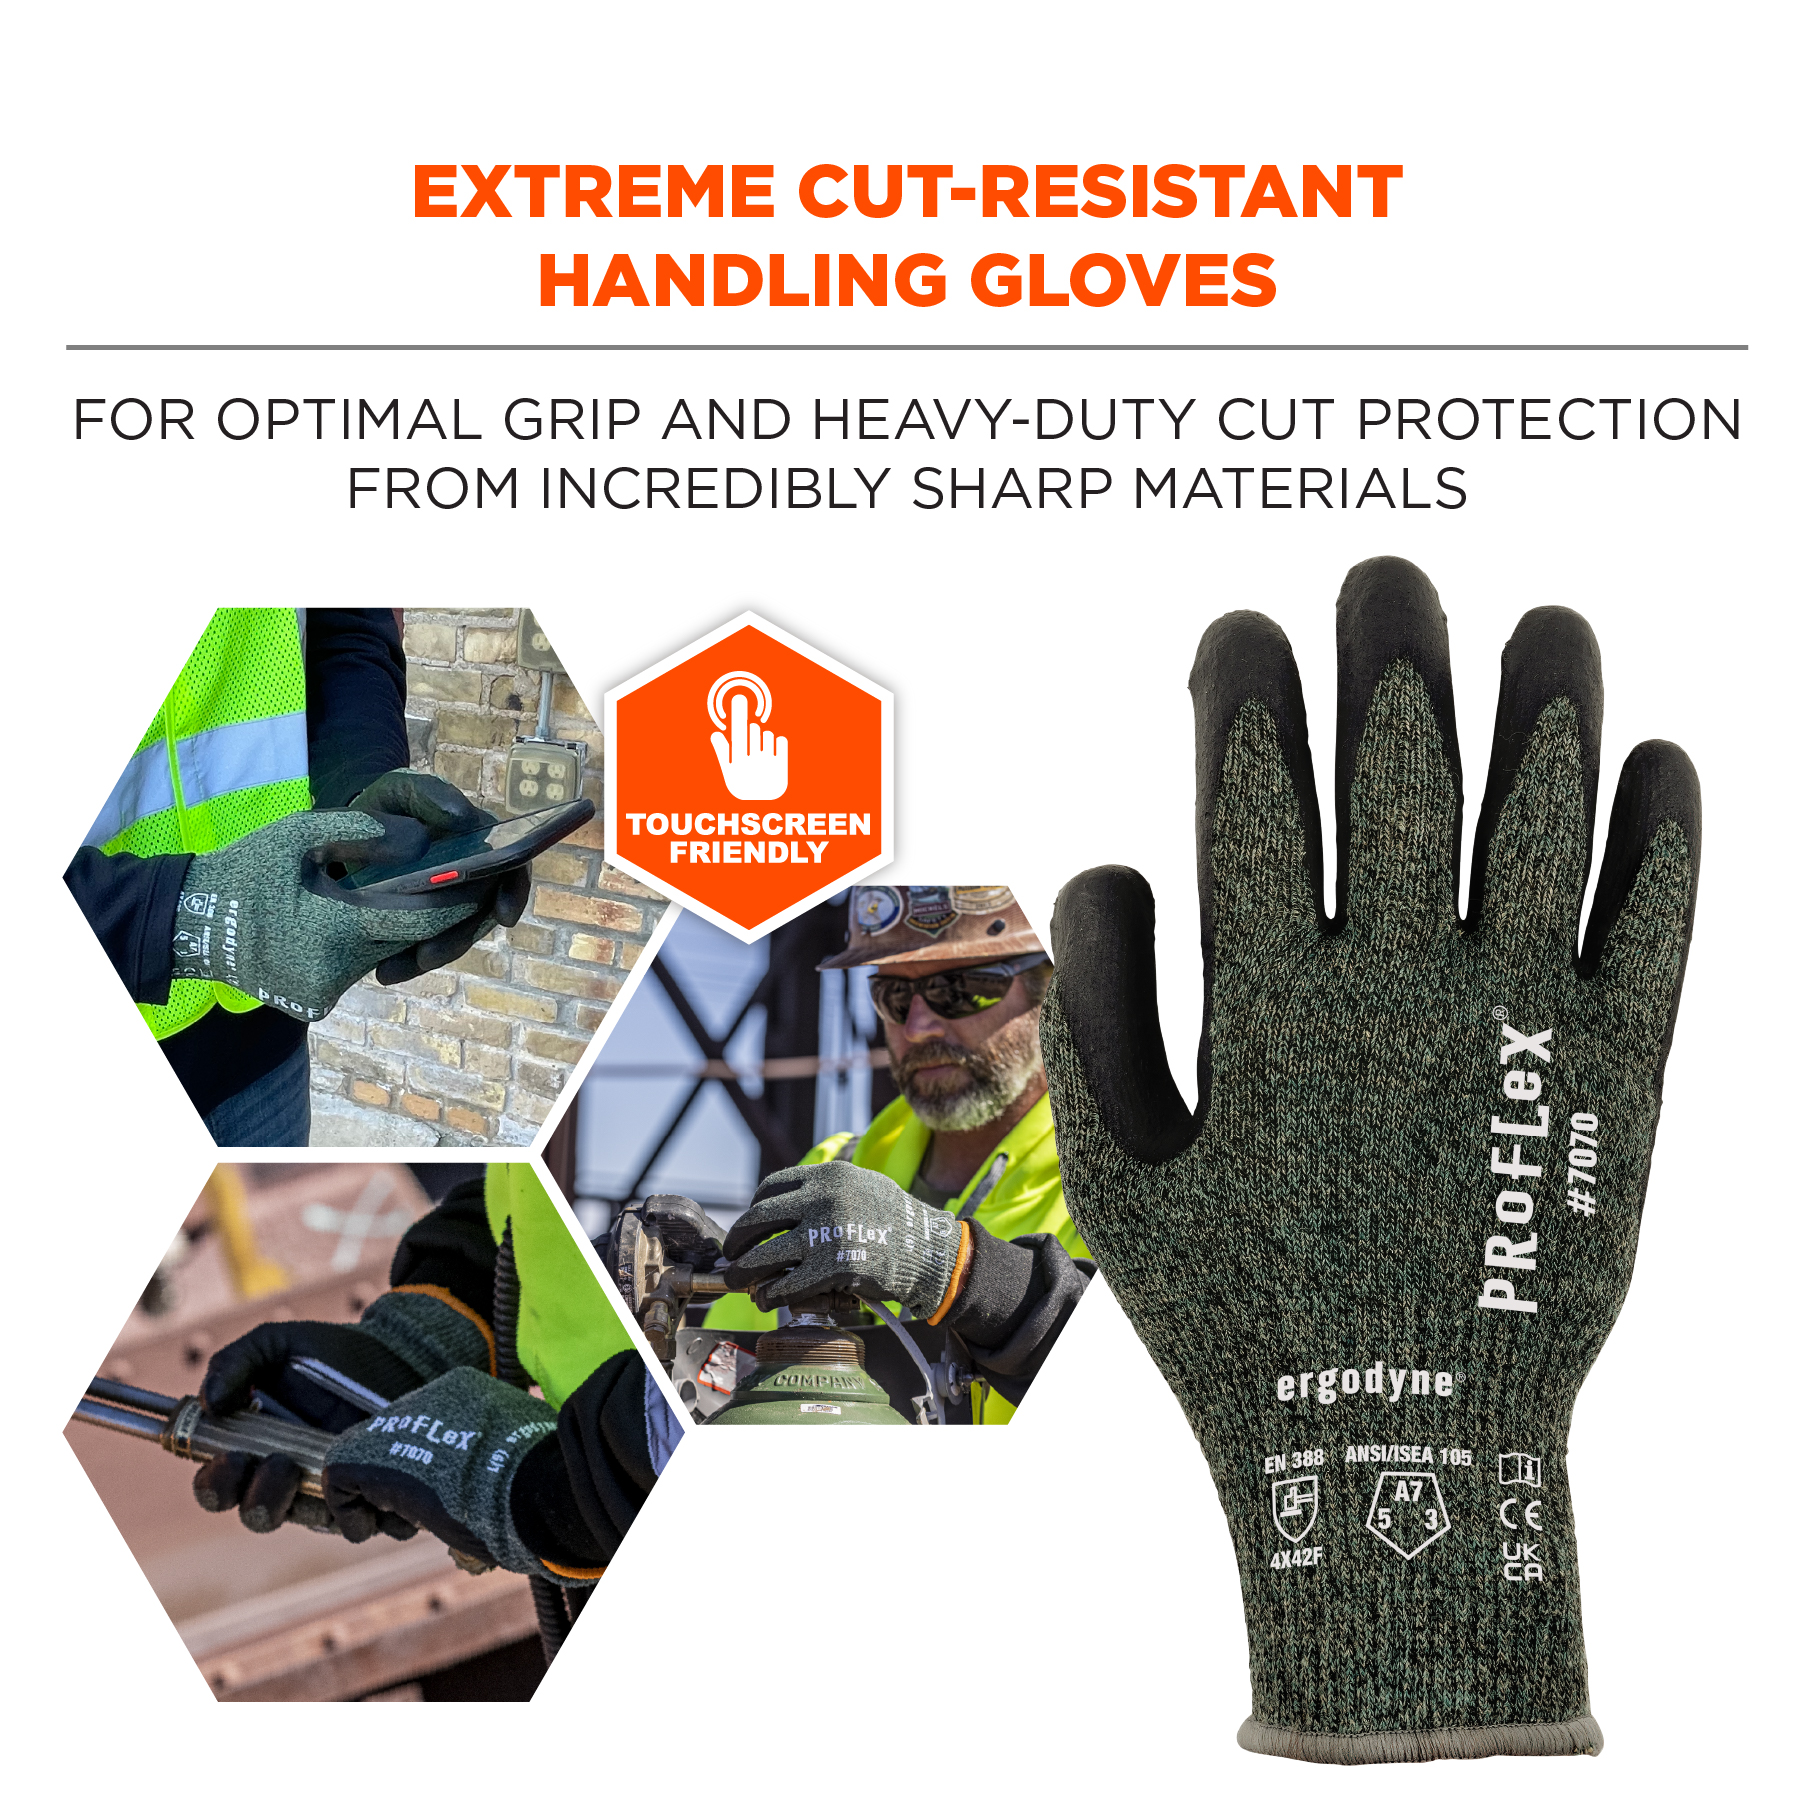 Coated Waterproof Winter Work Gloves - ANSI/ISEA 105-2016 Cut